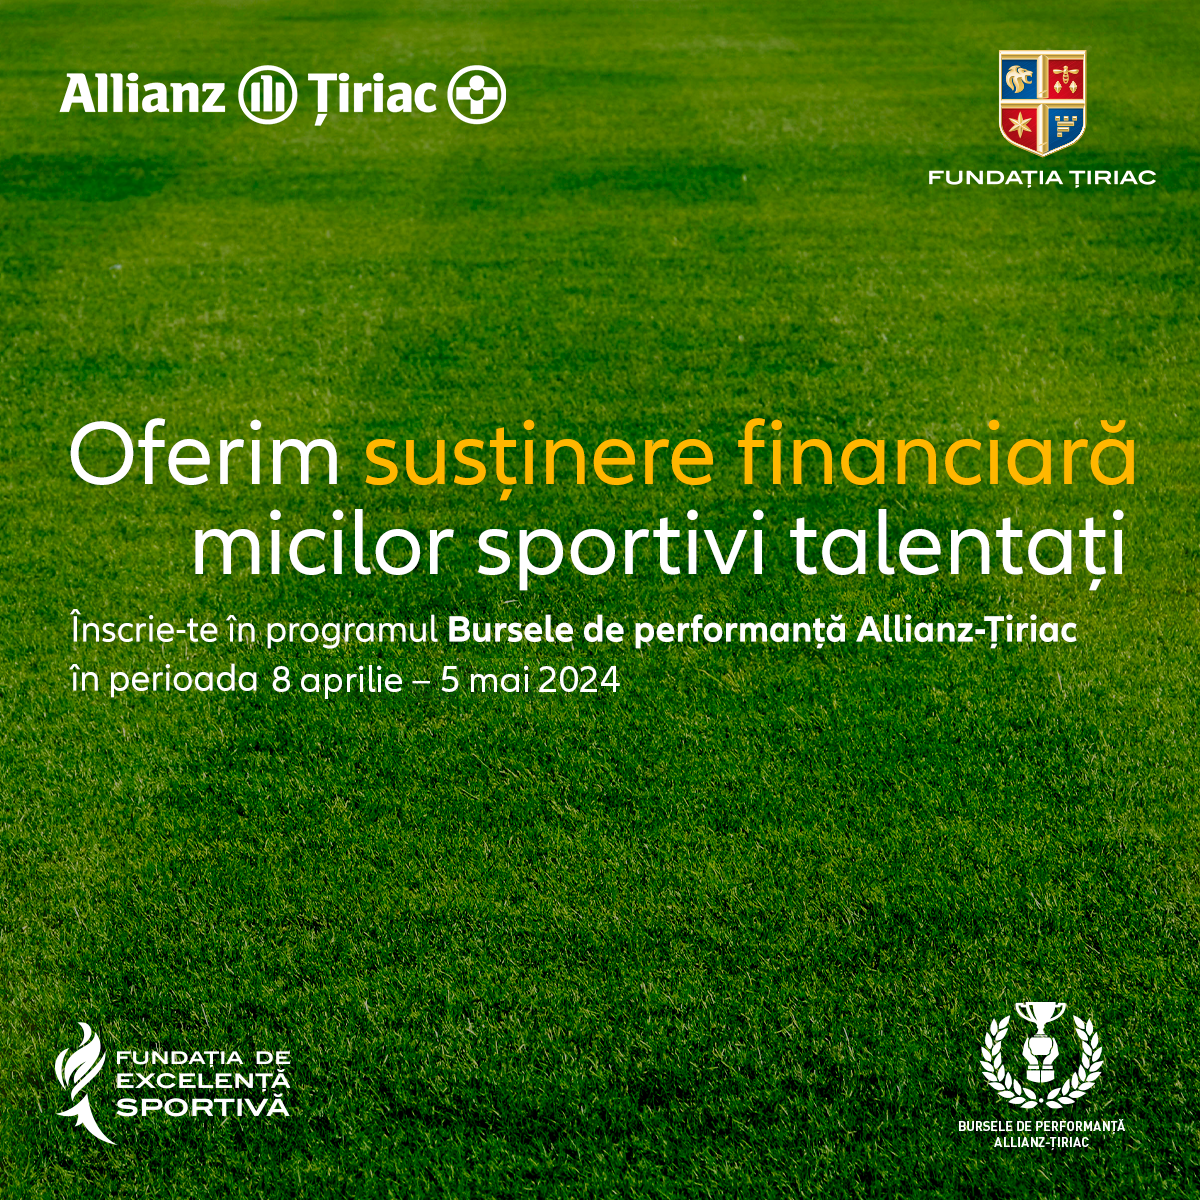 Fundația de Excelență Sportivă, Allianz-Țiriac Asigurări și Fundația Țiriac continuă să acorde sprijin financiar celor mai promițători juniori din disciplinele sportive olimpice